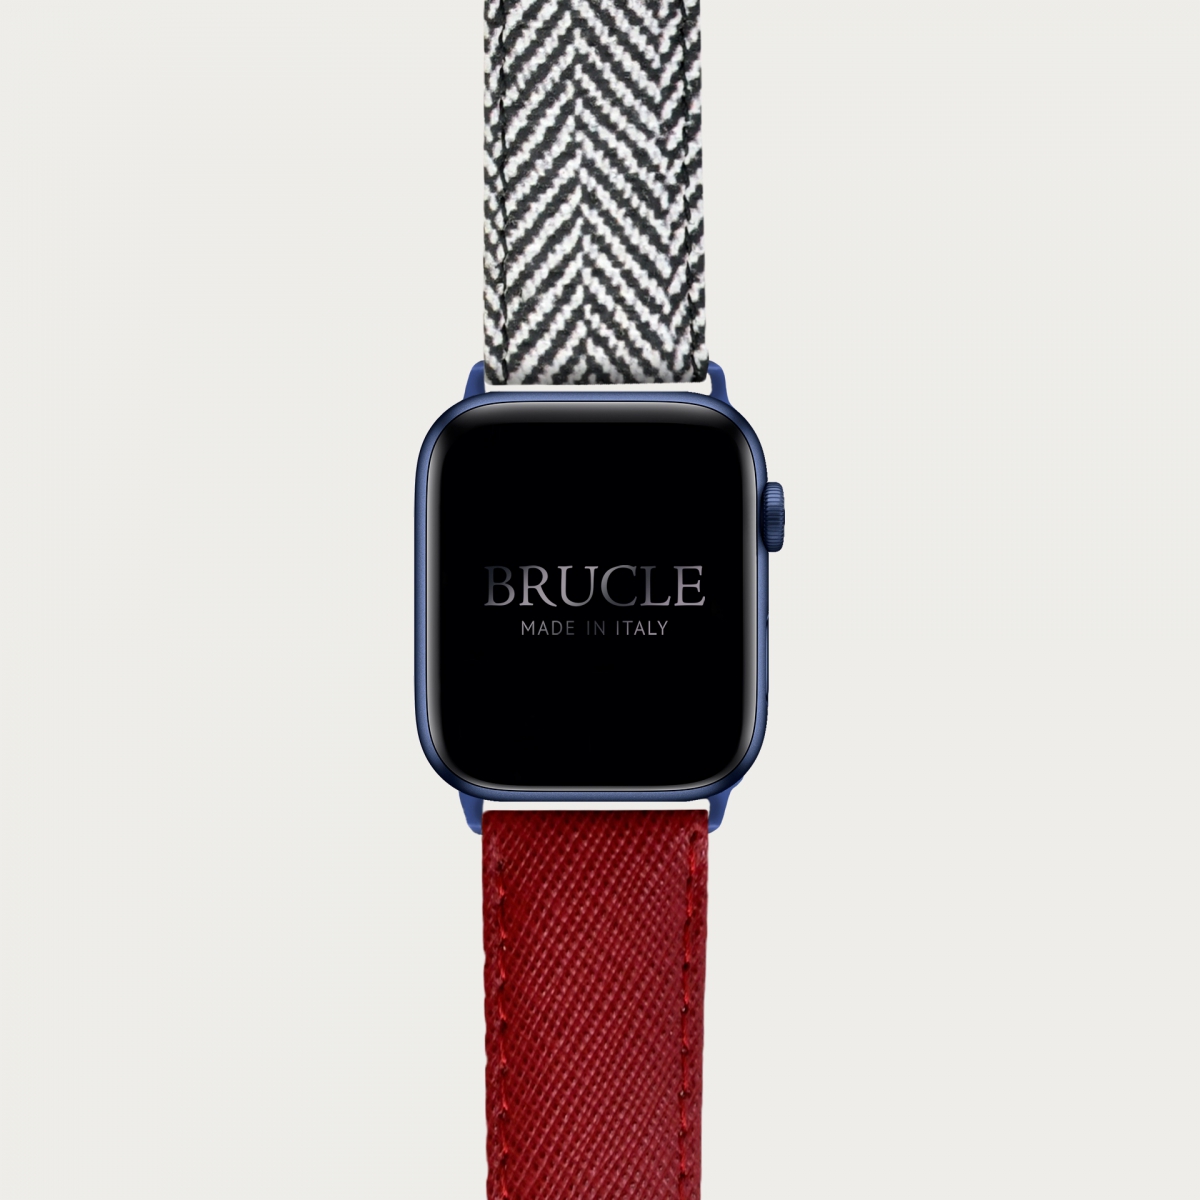 Armband kompatibel mit Apple Watch / Samsung Smartwatch, Saffiano Rot und Fischgrätmuster